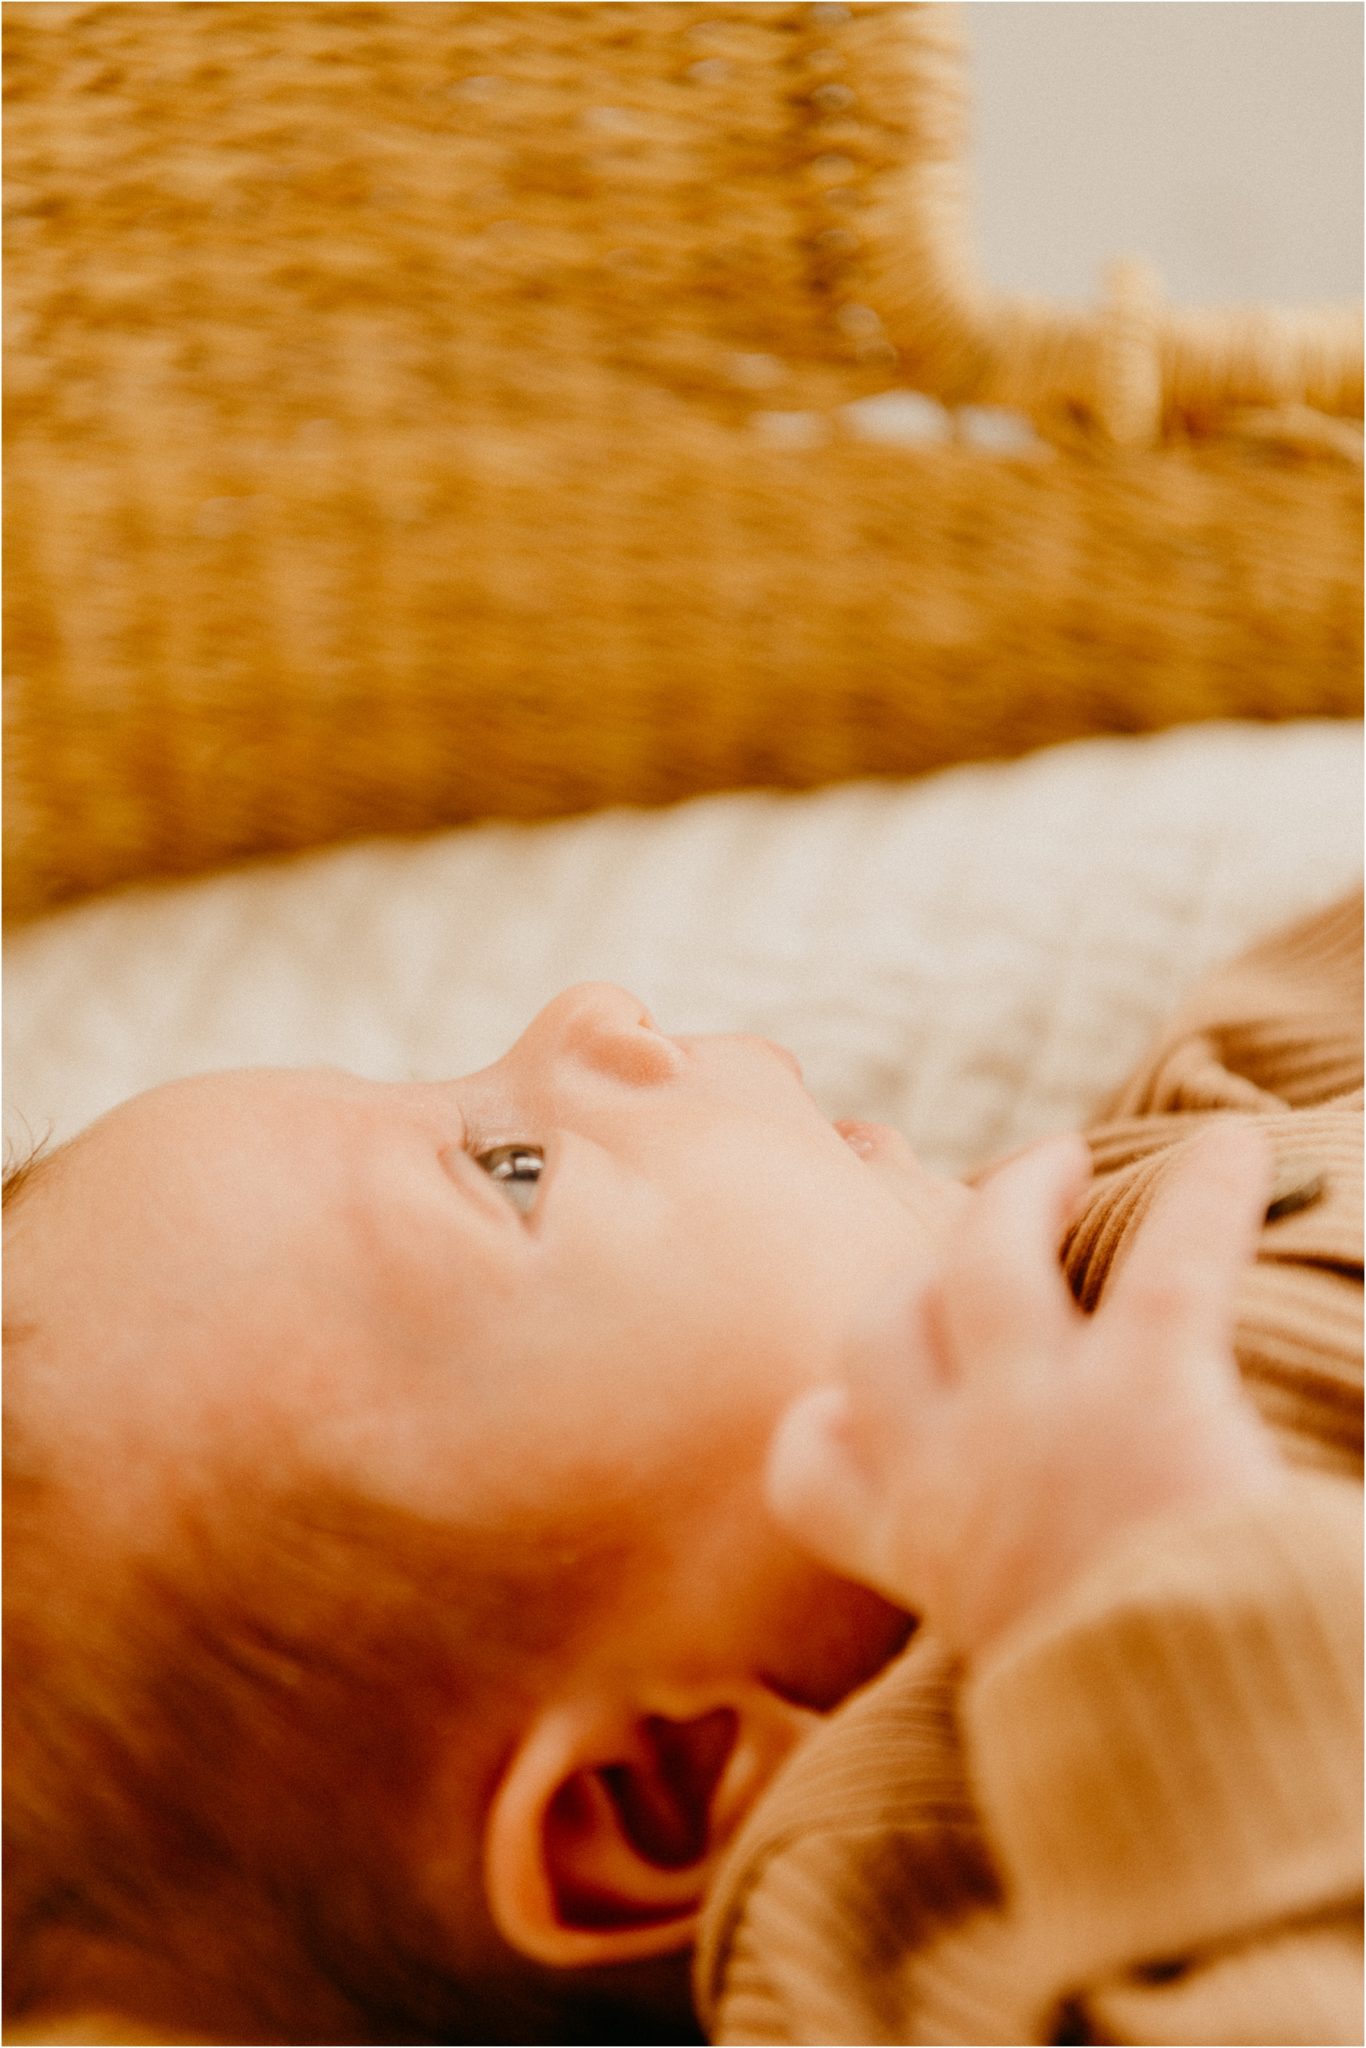 baby face and nose closeup